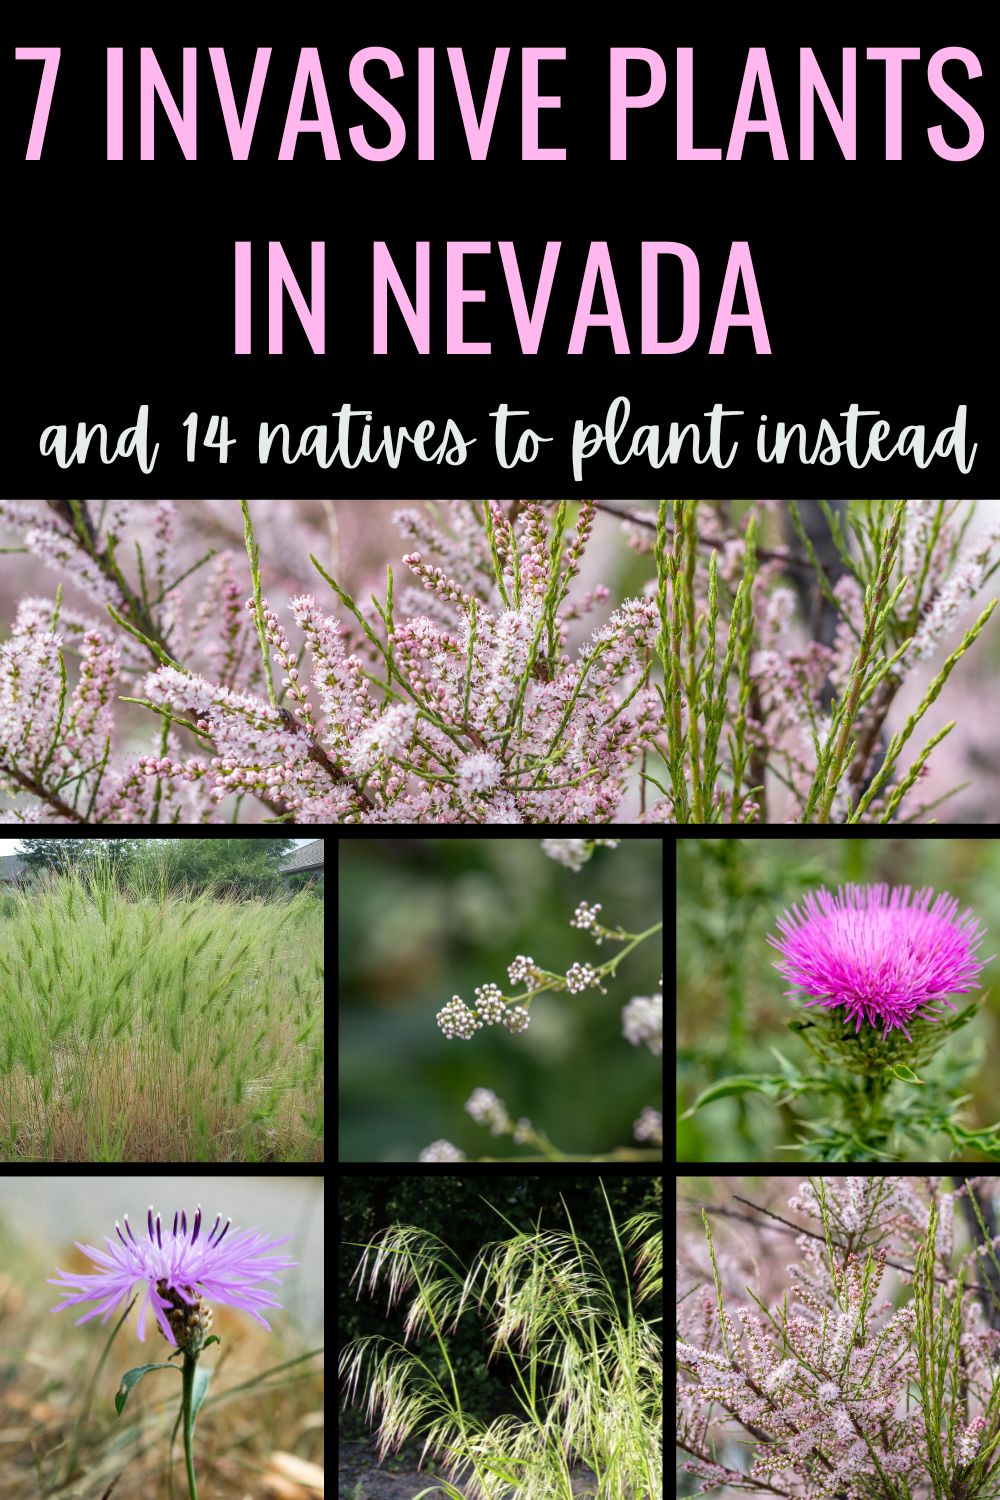 7 invasive plants in Nevada.